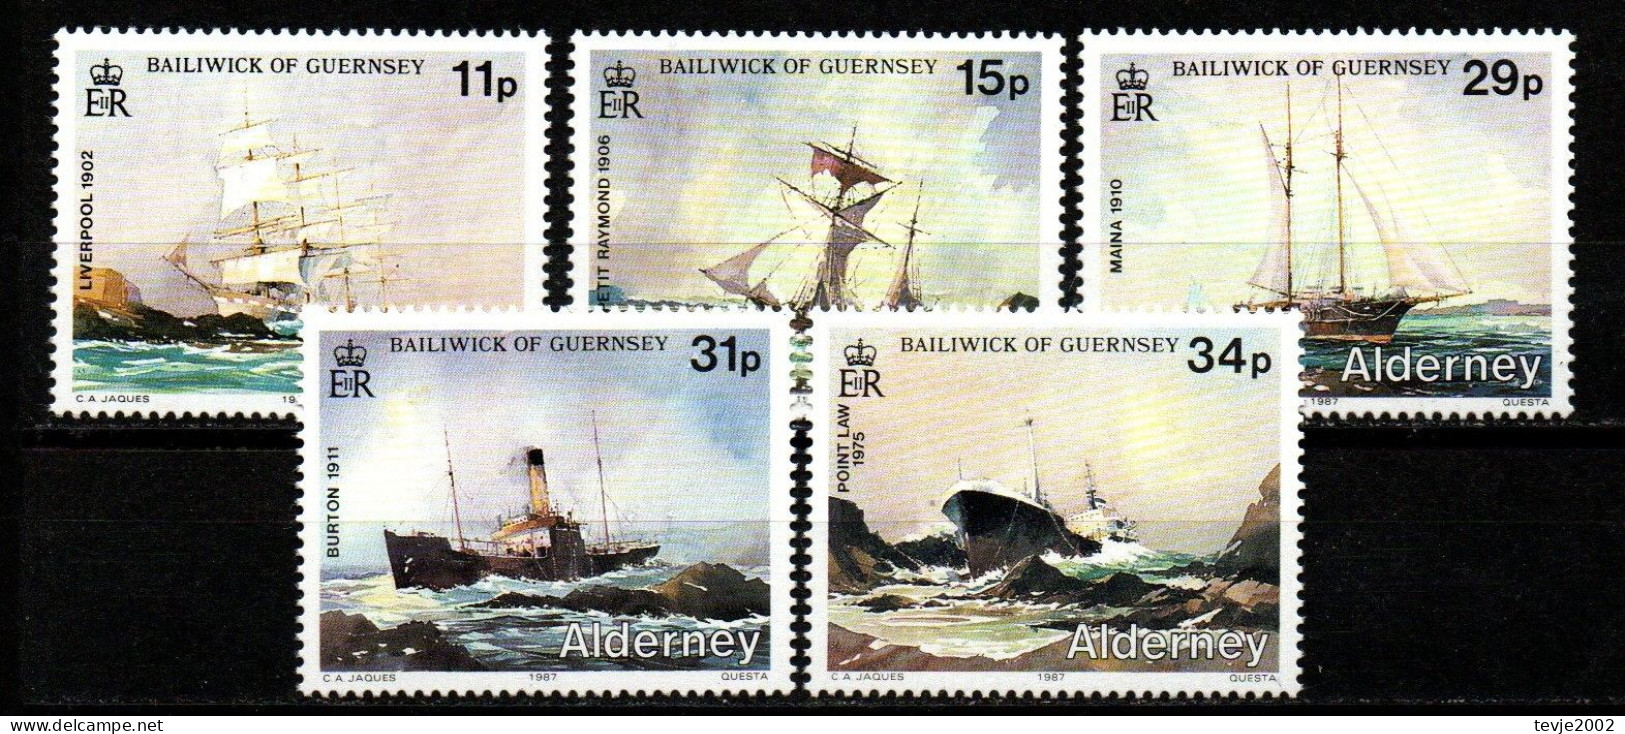 Alderney 1987 - Mi.Nr. 32 - 36 - Postfrisch MNH - Schiffe Ships - Bateaux